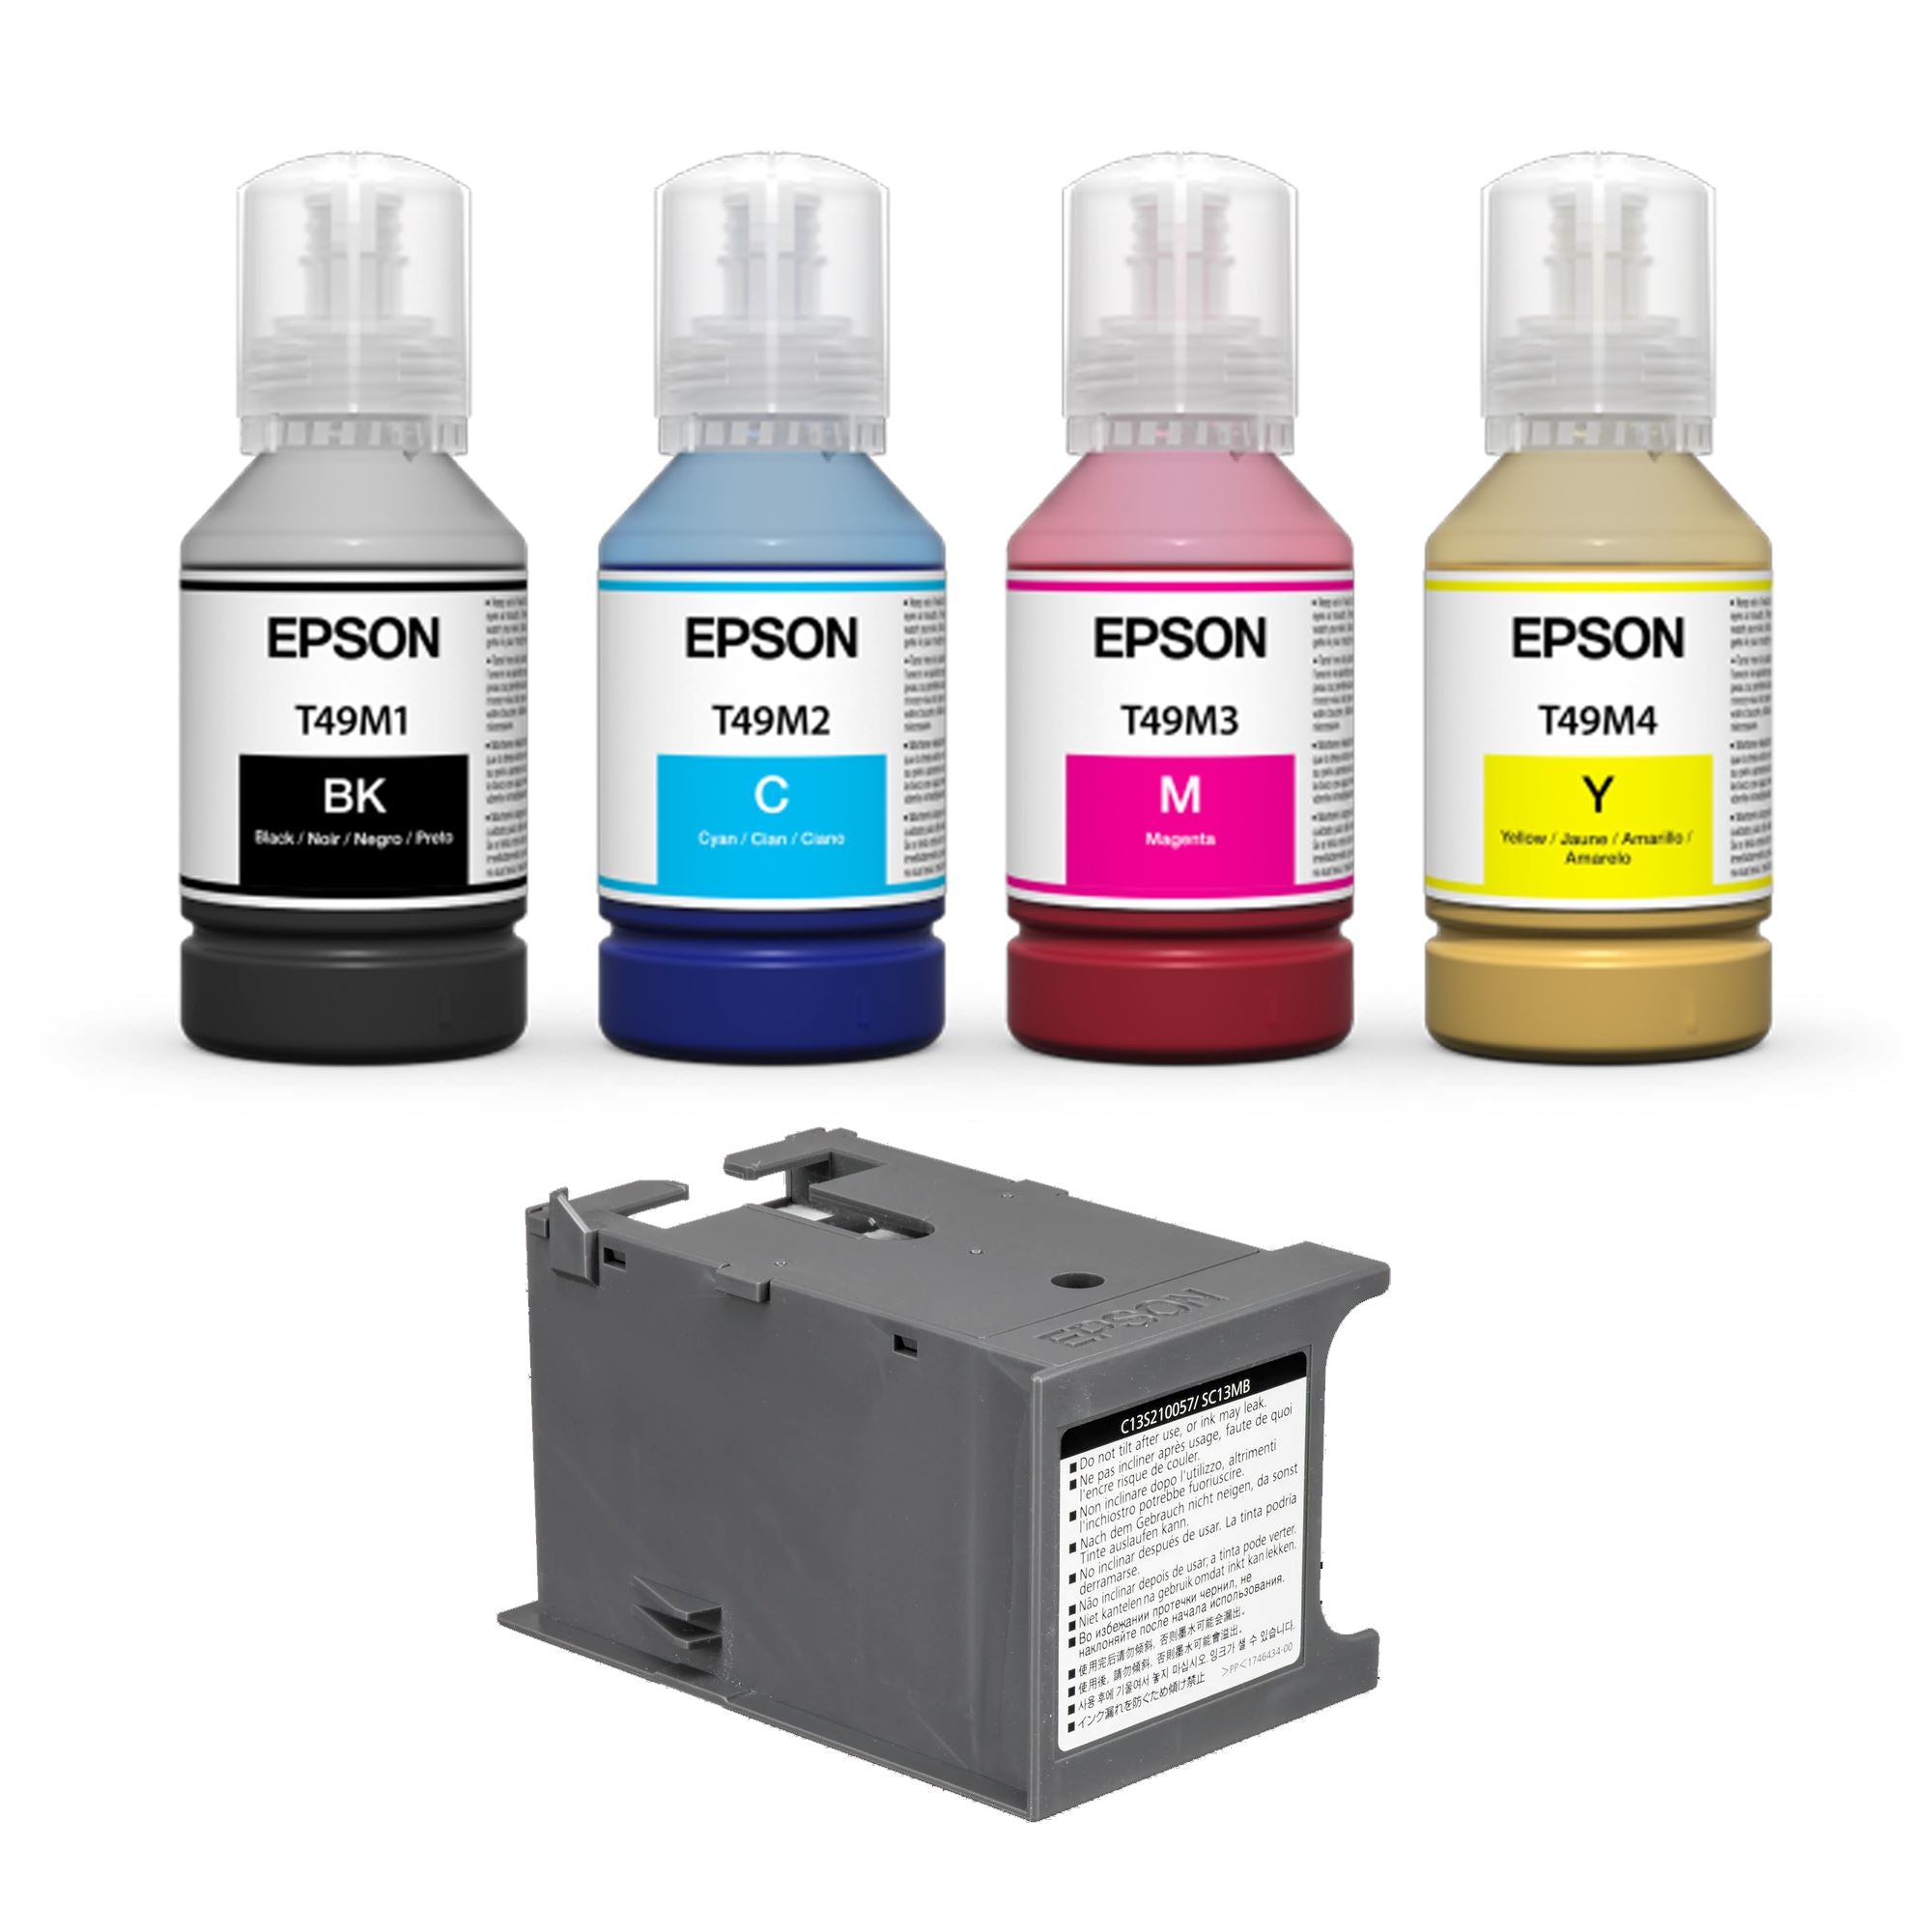 Necklet Beschuldiging Vooroordeel Epson F570 Printer Ink Set Bundle on Sale | Swing Design